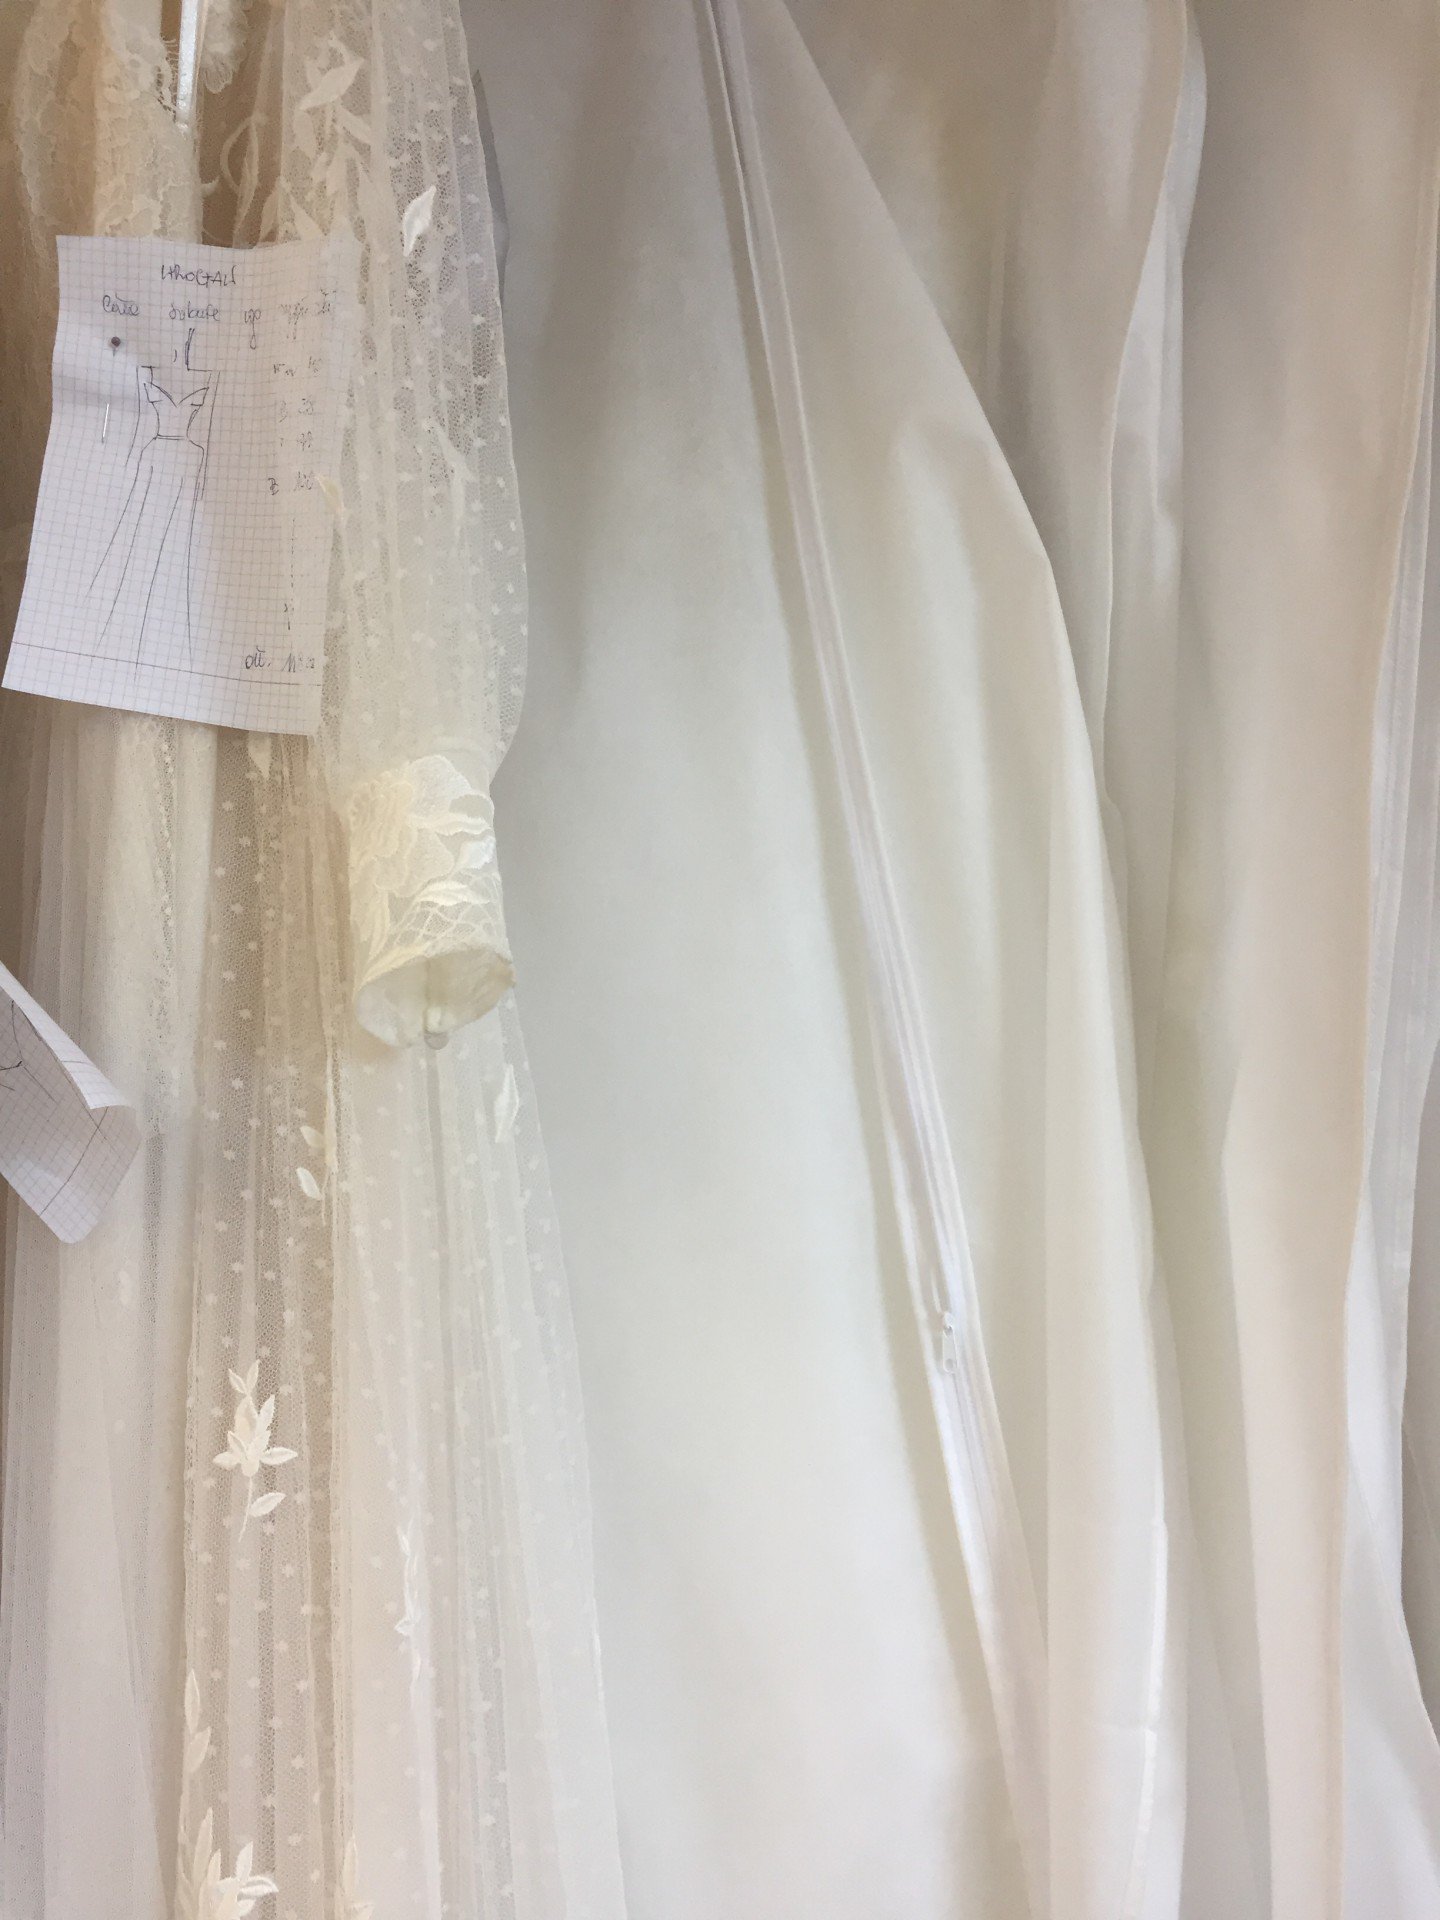 Viele weiße Hochzeitskleider hängend im Laden auf der Calenberger Straße